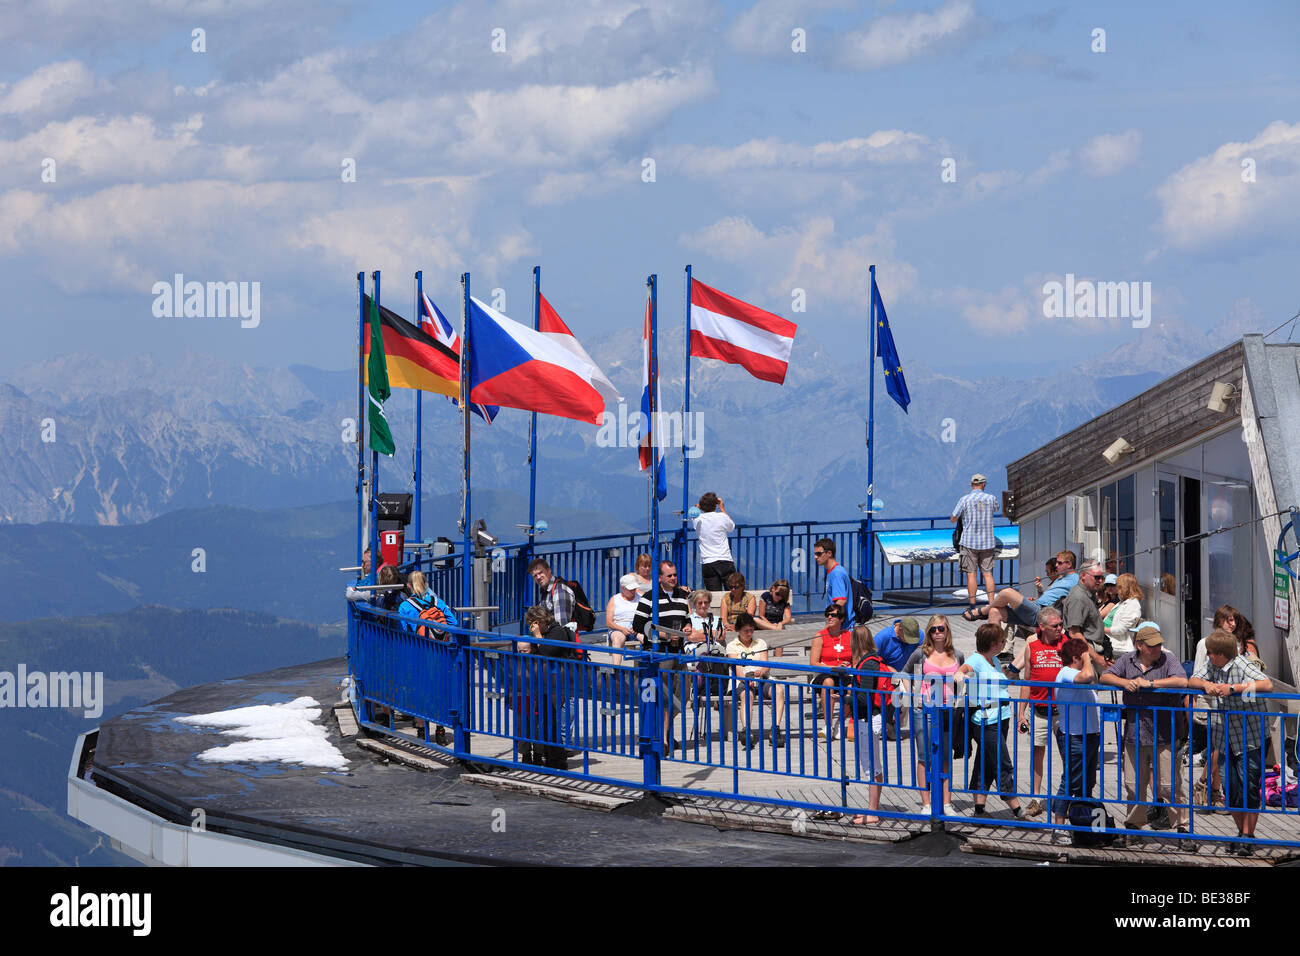 Plate-forme d'observation, sommet de la station de téléphérique Kitzsteinhorn, Hohe Tauern, l'état fédéral de Salzbourg, Autriche, de l'Union européenne Banque D'Images